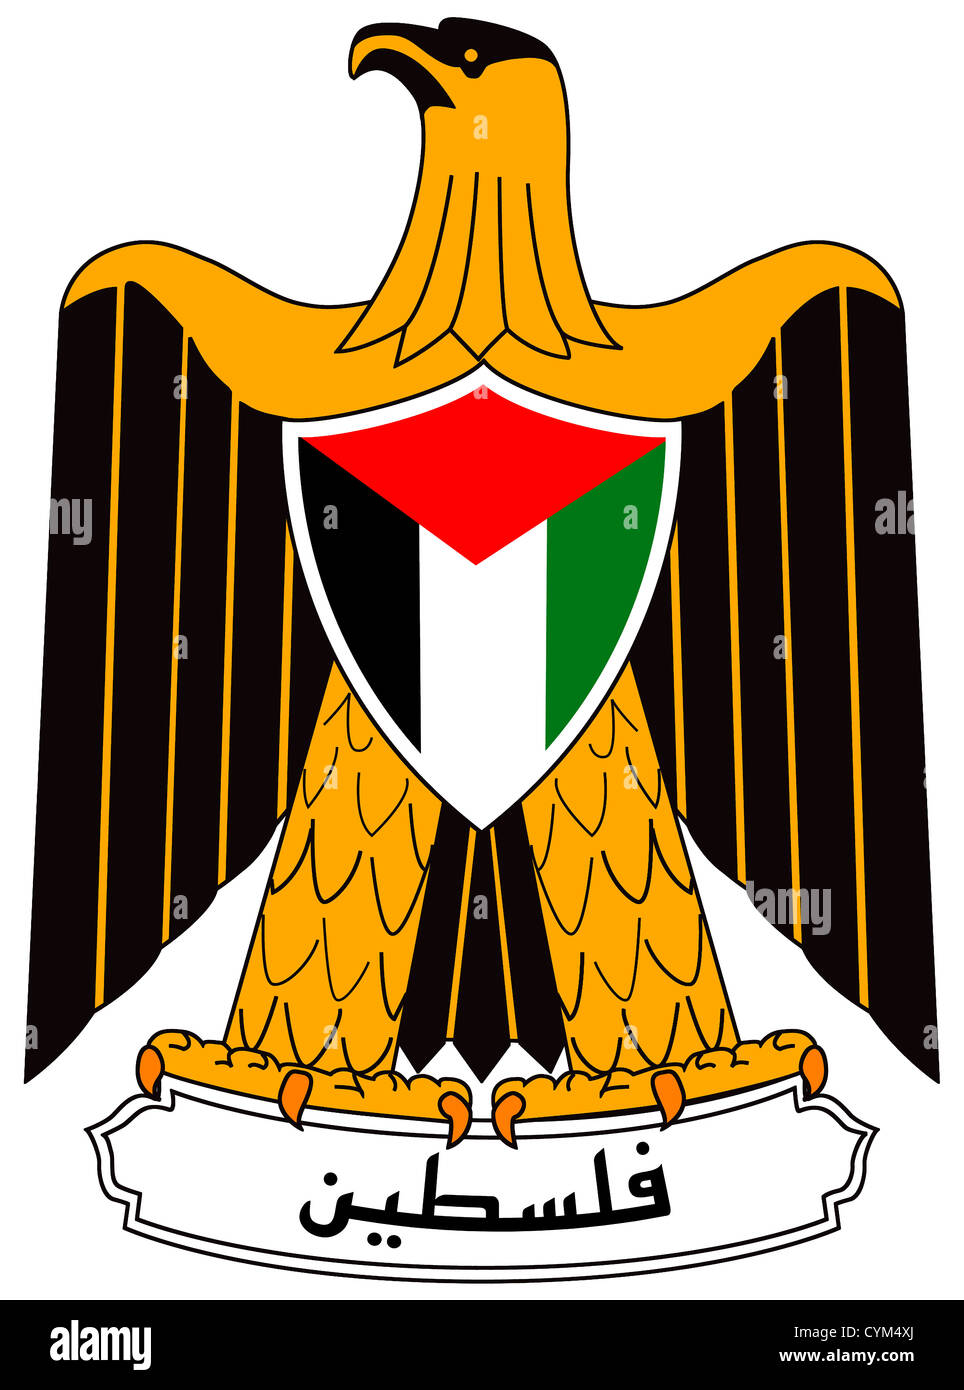 Wappen von der palästinensischen Autonomiebehörde mit Sitz in Ramallah  Stockfotografie - Alamy